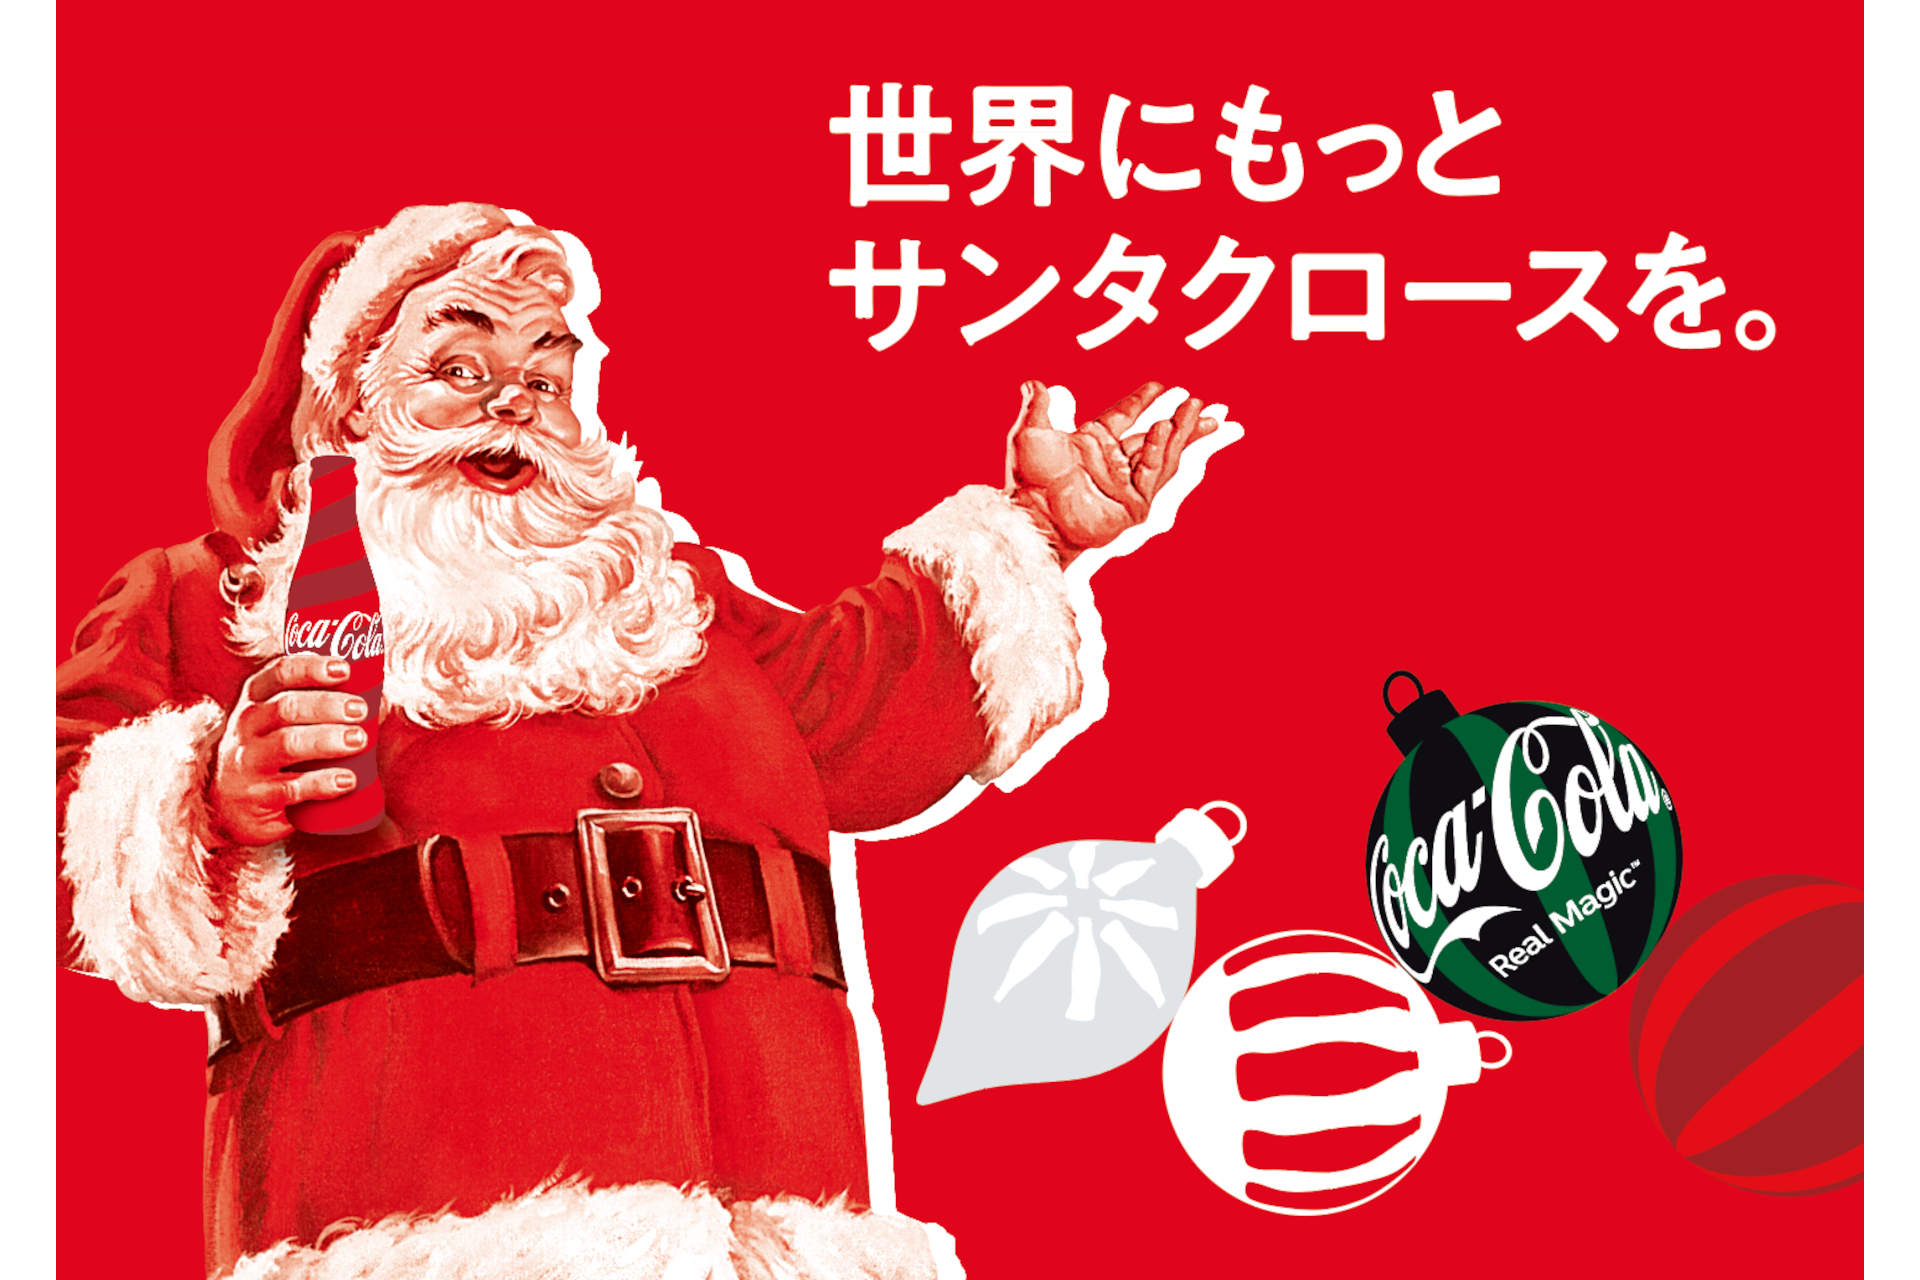 「コカ・コーラ クリスマストラックツアー」全国8都市を巡回